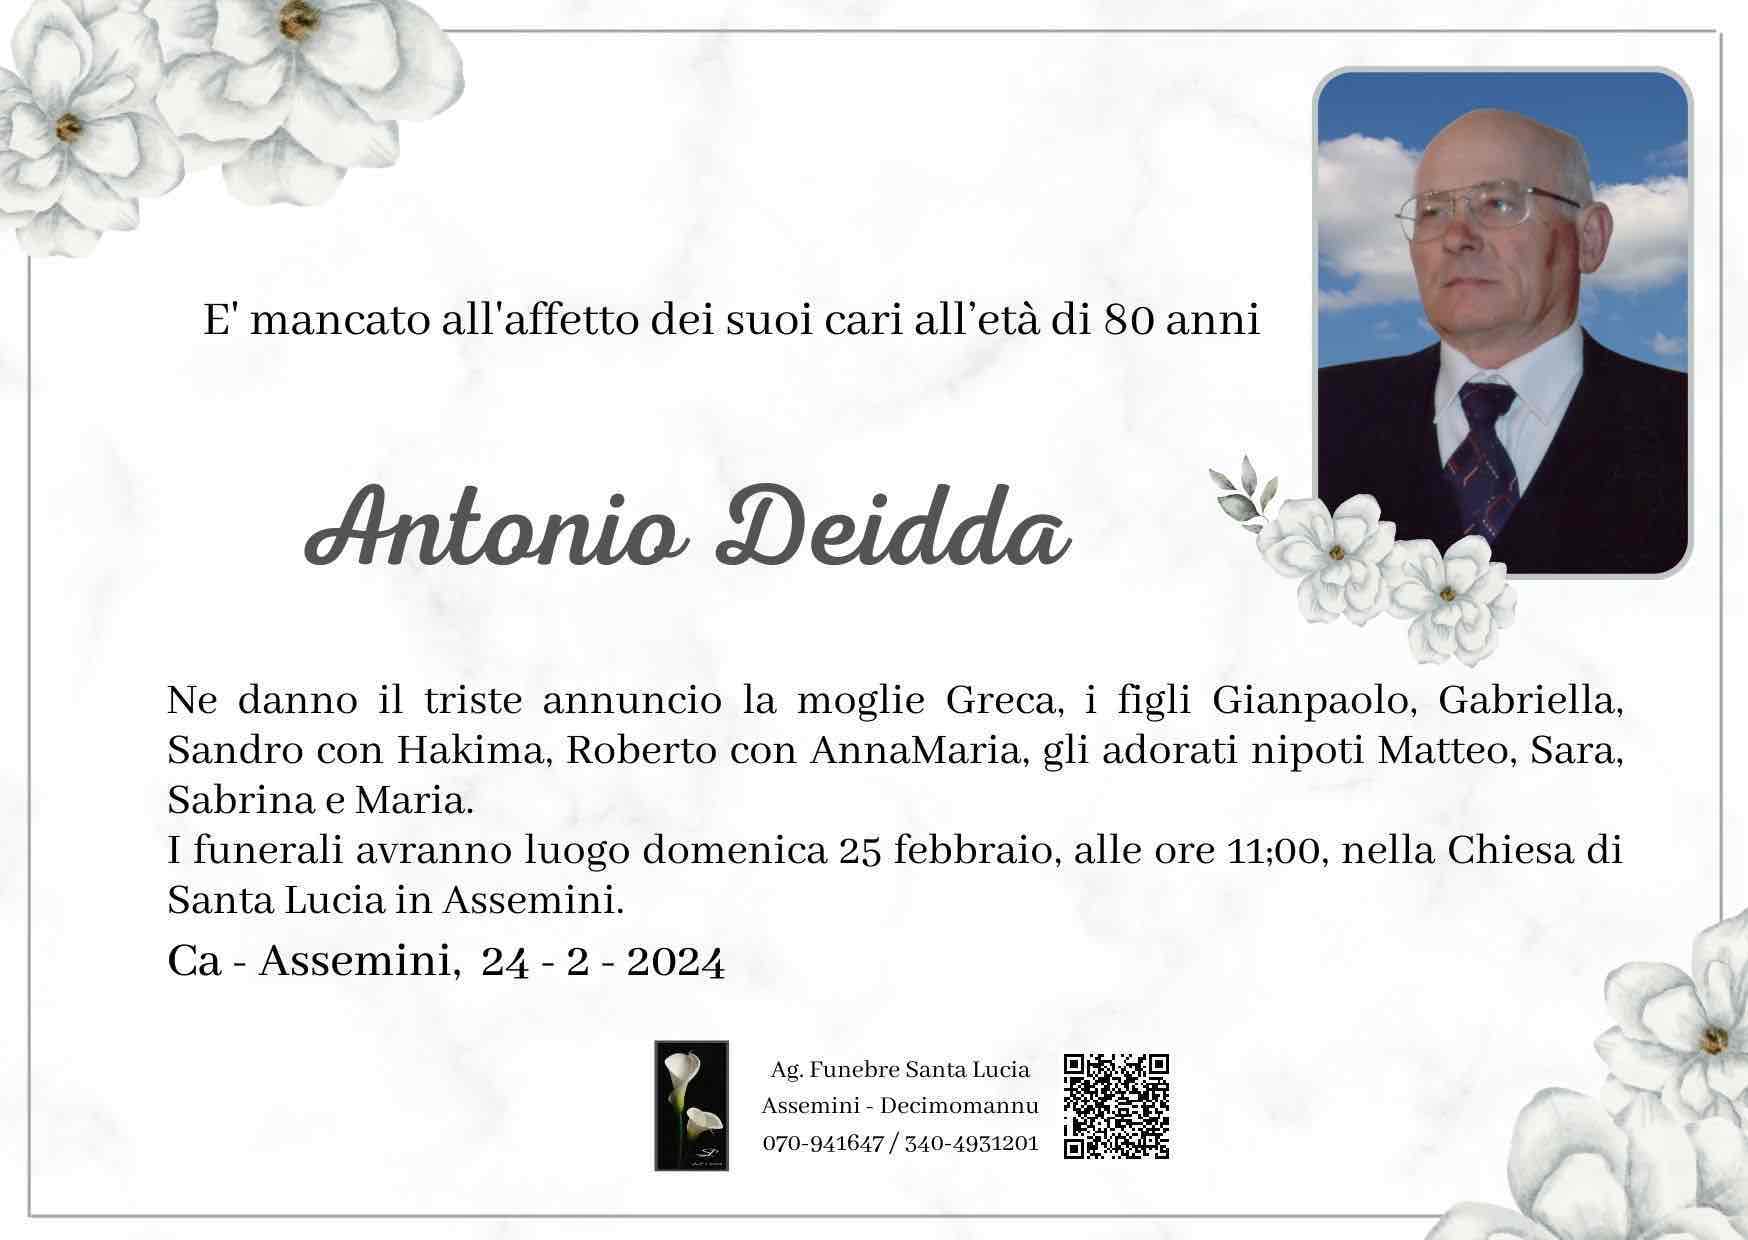 Antonio Deidda